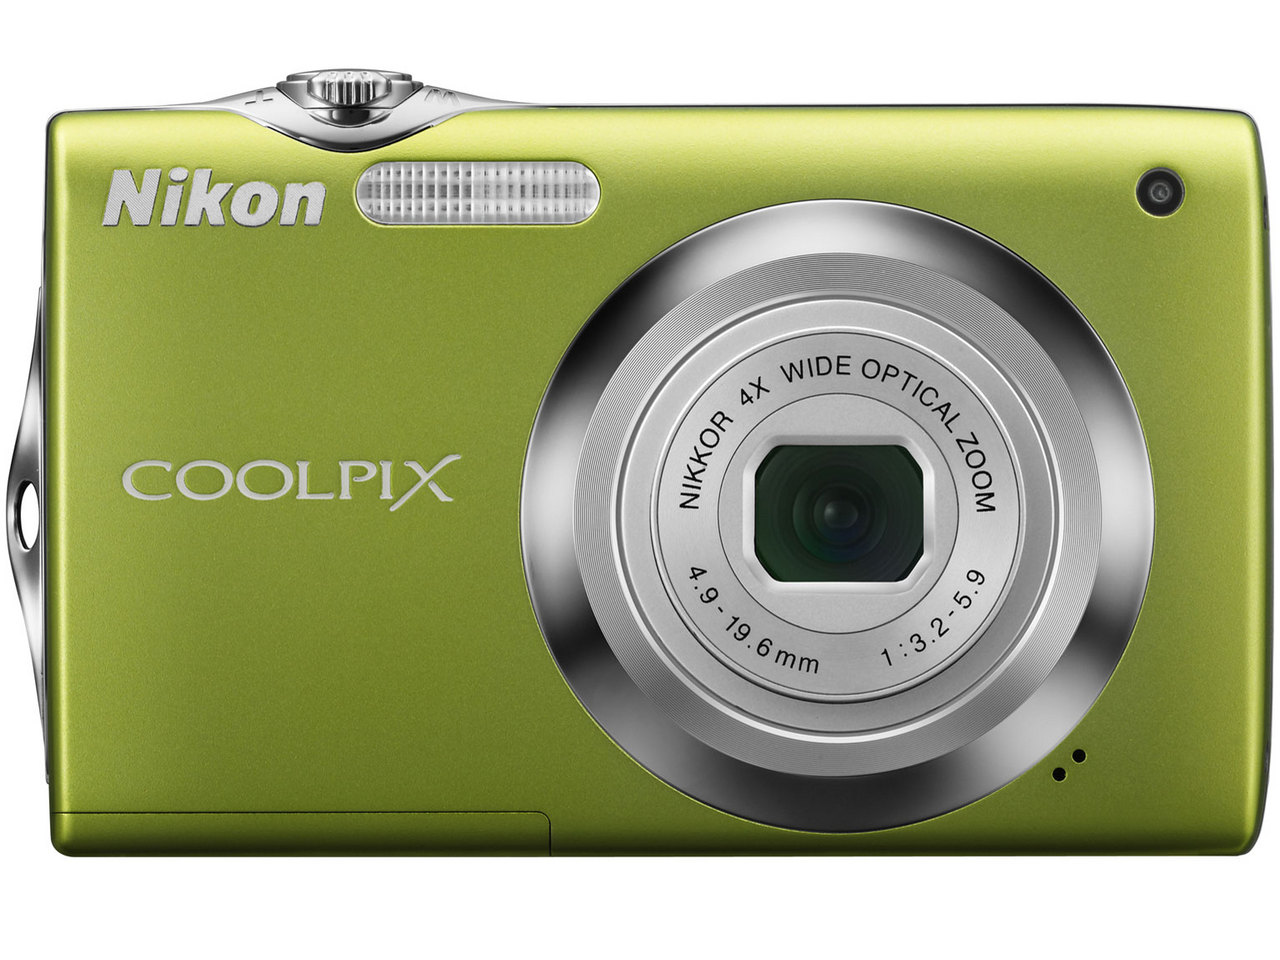 価格.com - 『本体 正面 ポップグリーン』 COOLPIX S3000 の製品画像